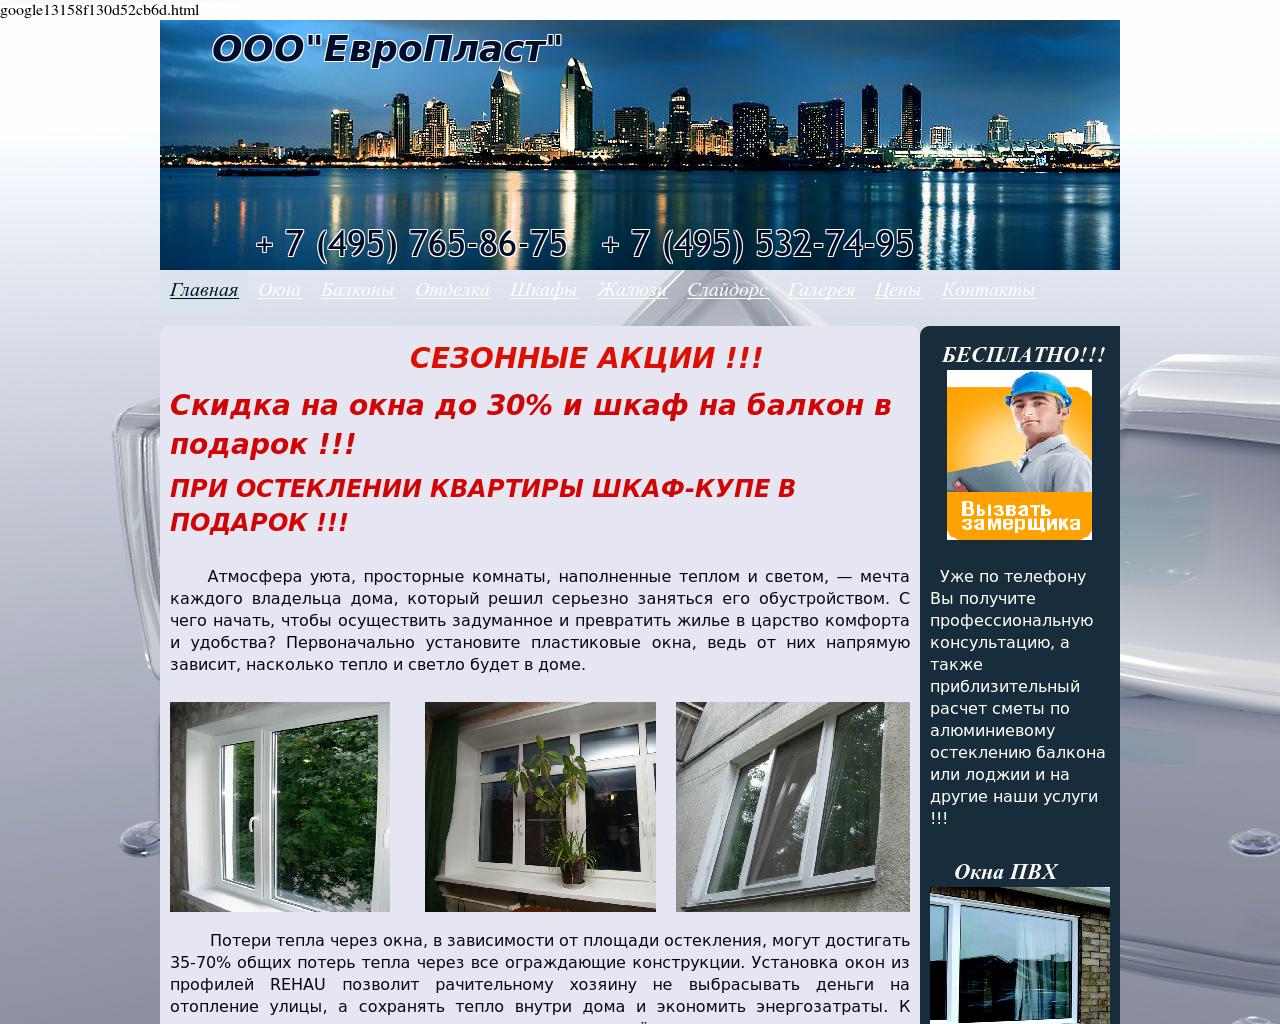 Изображение сайта okna-europlast.ru в разрешении 1280x1024